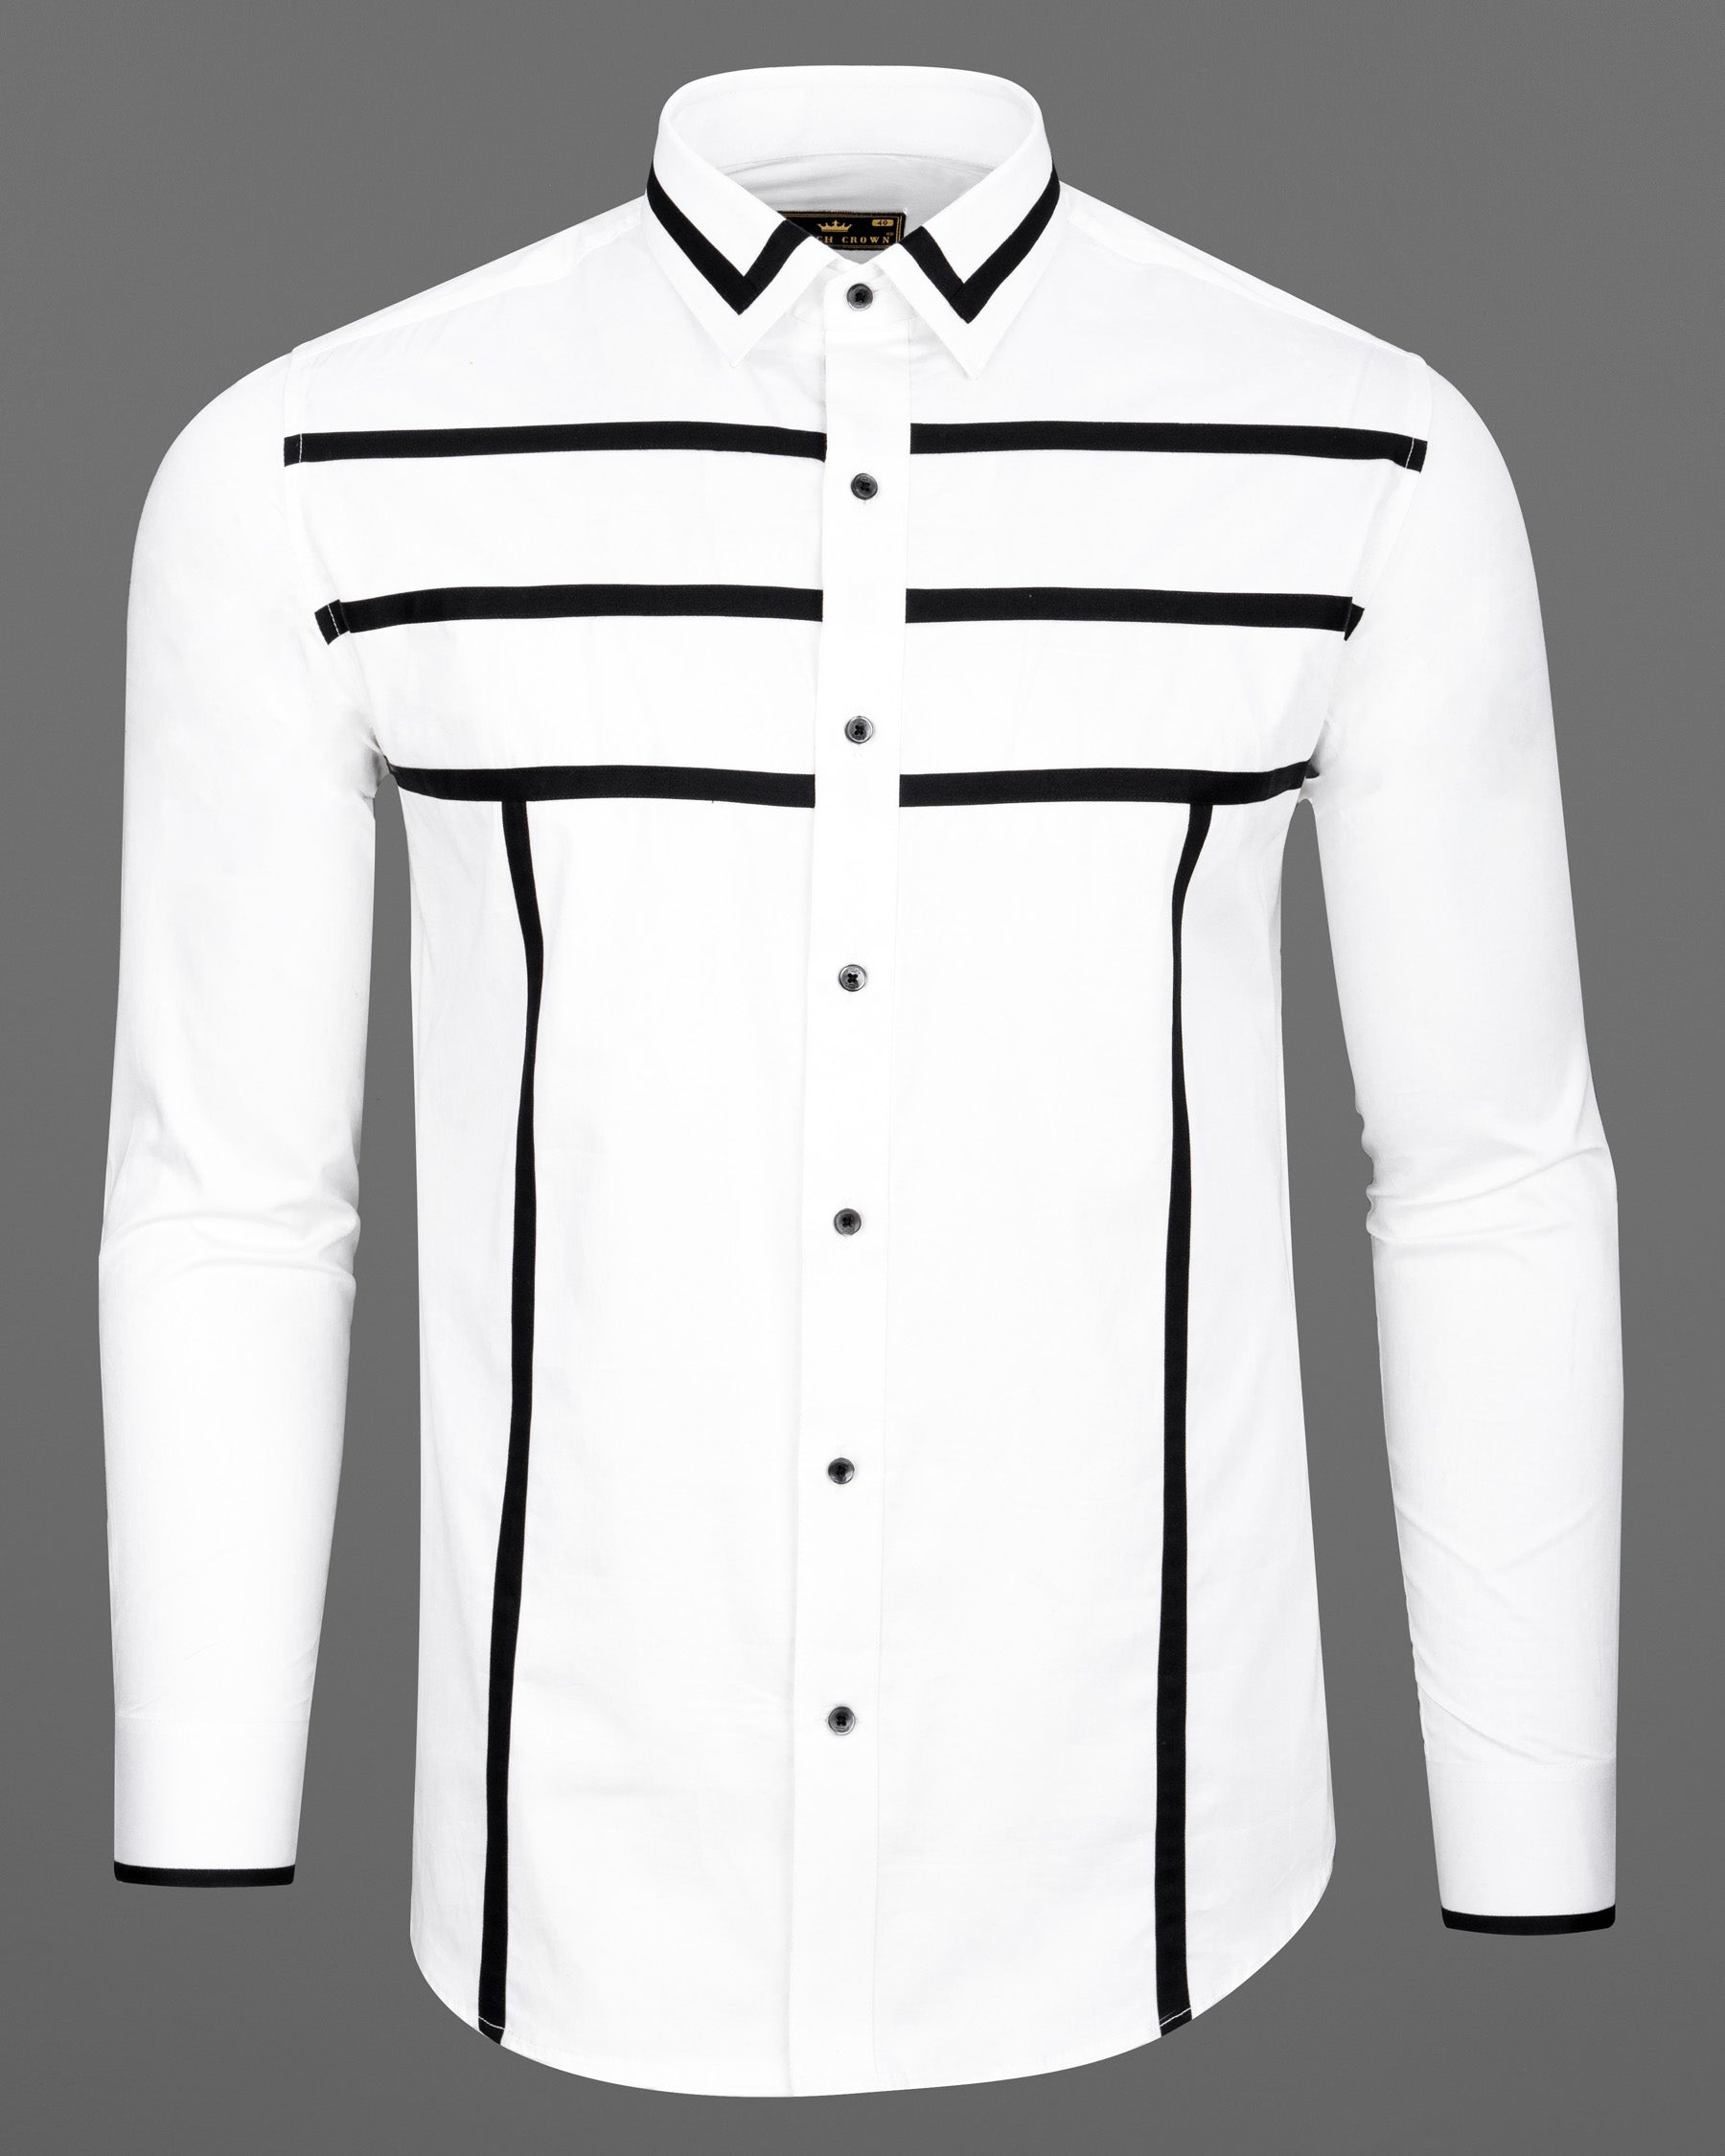 Bright White Subtle Sheen and Black Striped  Super Soft Premium Cotton Designer Shirt 6821-BLK-P303-38, 6821-BLK-P303-H-38, 6821-BLK-P303-39, 6821-BLK-P303-H-39, 6821-BLK-P303-40, 6821-BLK-P303-H-40, 6821-BLK-P303-42, 6821-BLK-P303-H-42, 6821-BLK-P303-44, 6821-BLK-P303-H-44, 6821-BLK-P303-46, 6821-BLK-P303-H-46, 6821-BLK-P303-48, 6821-BLK-P303-H-48, 6821-BLK-P303-50, 6821-BLK-P303-H-50, 6821-BLK-P303-52, 6821-BLK-P303-H-52